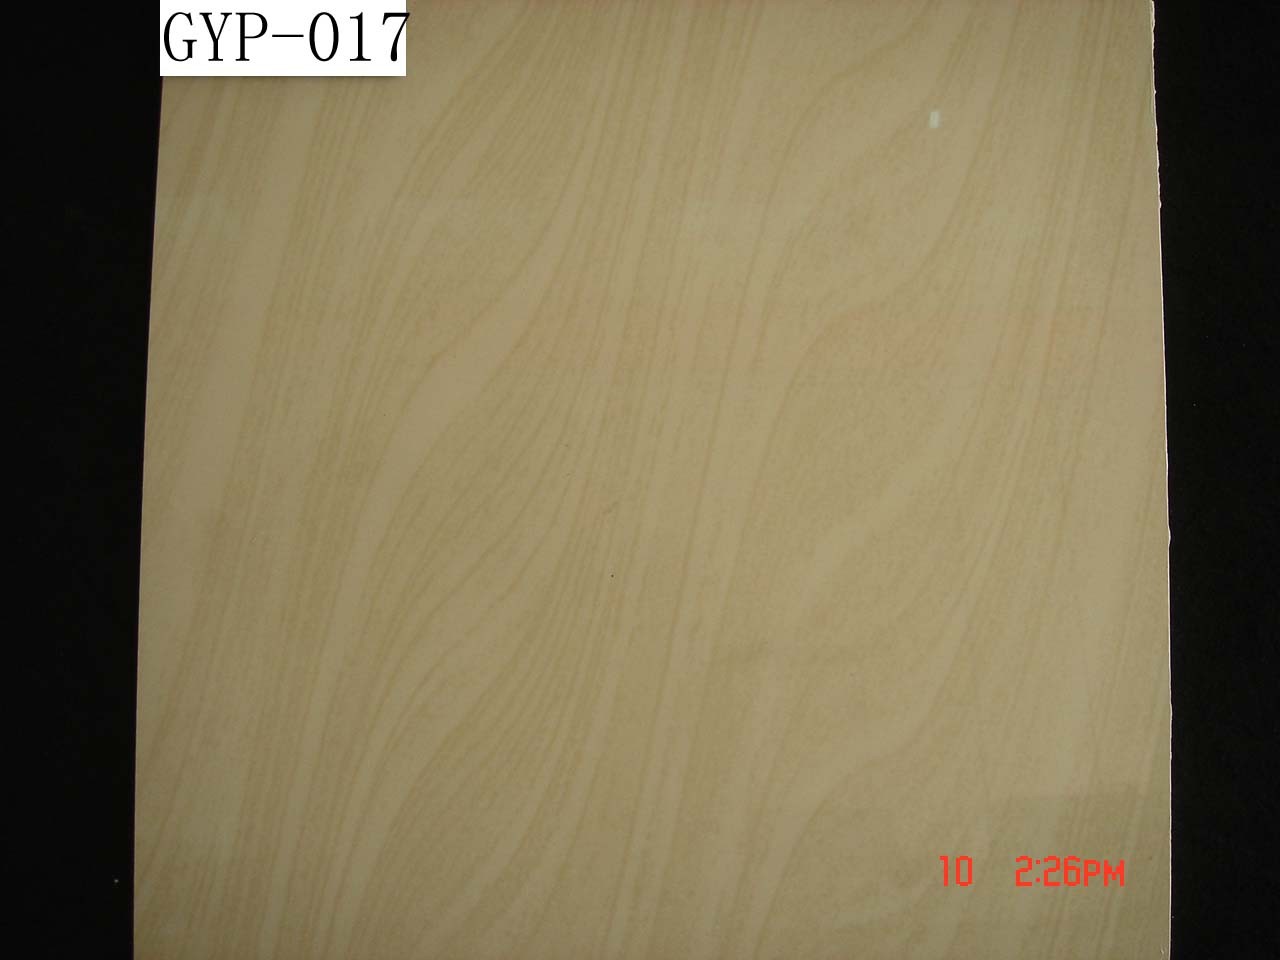 High quality soluble salt tiles GYP-017